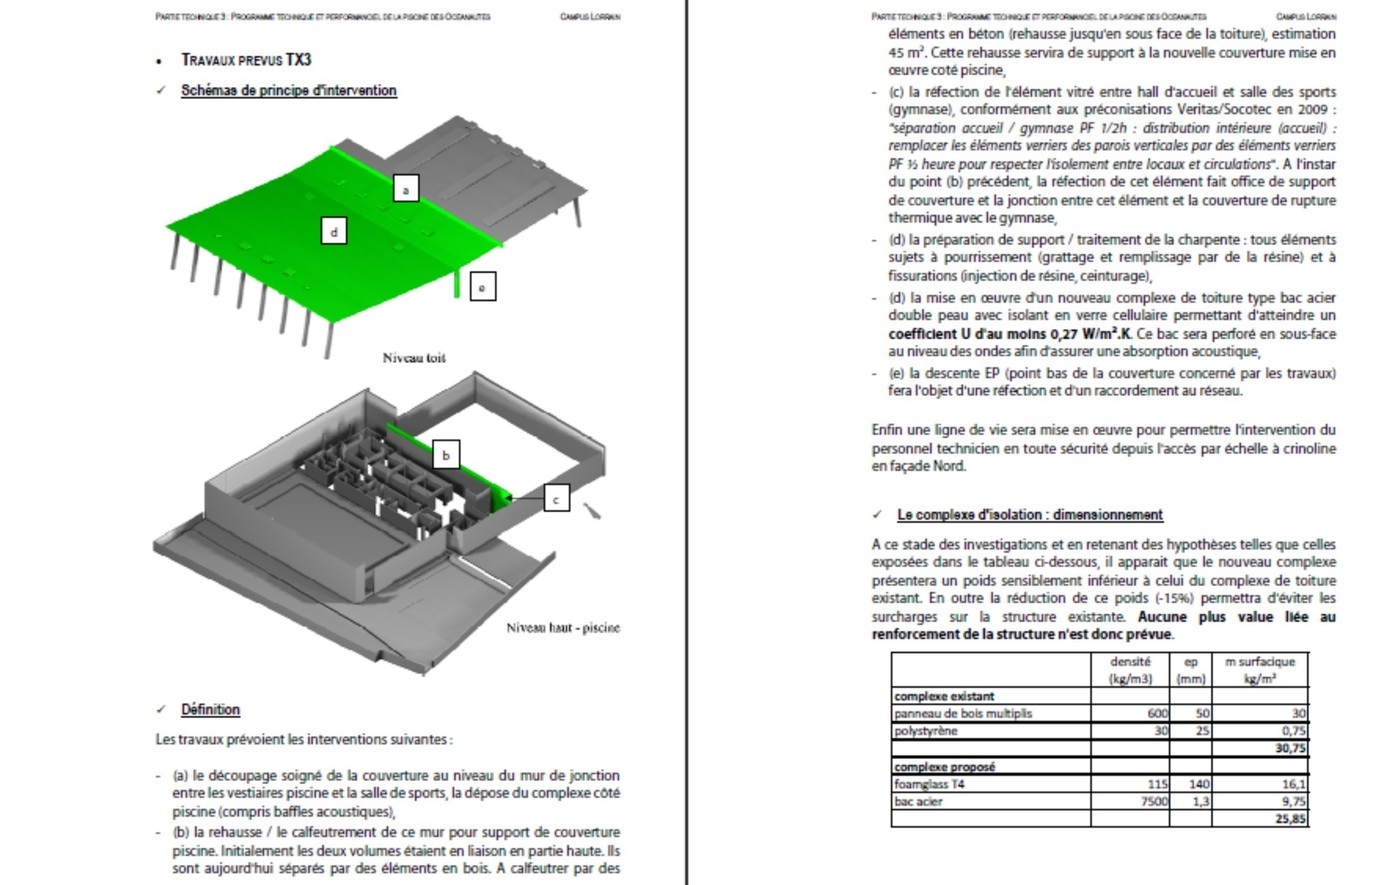 Détail des travaux prévus en toiture (programme) - ProPolis